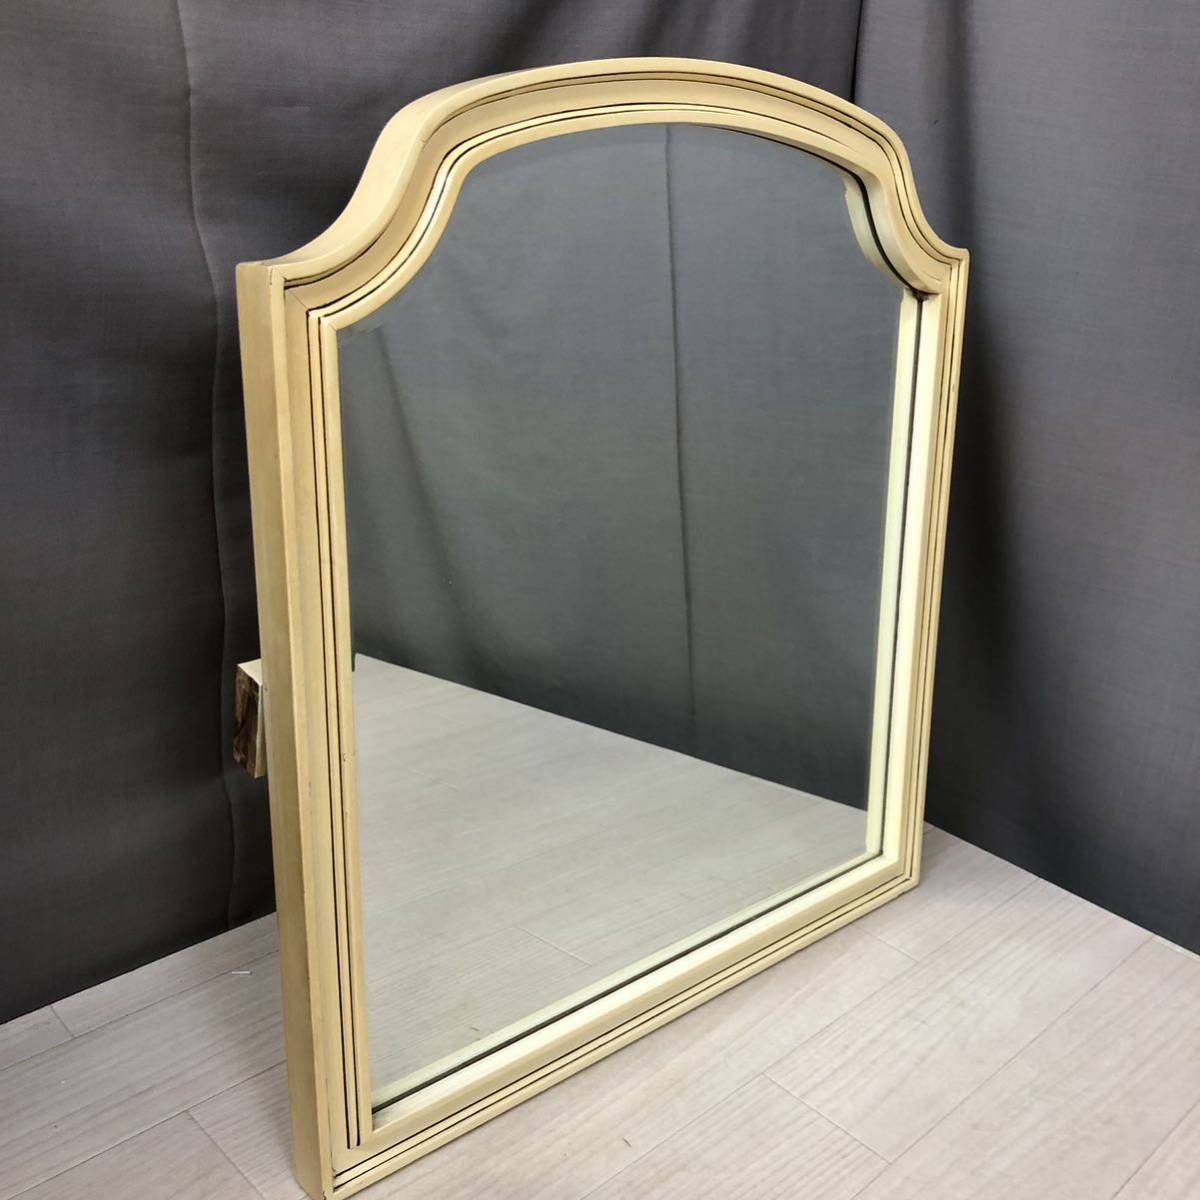 O371] настольный зеркало класть type зеркало античный зеркало под старину Vintage старый предмет дизайн зеркало стиль редкость . зеркало meruhen